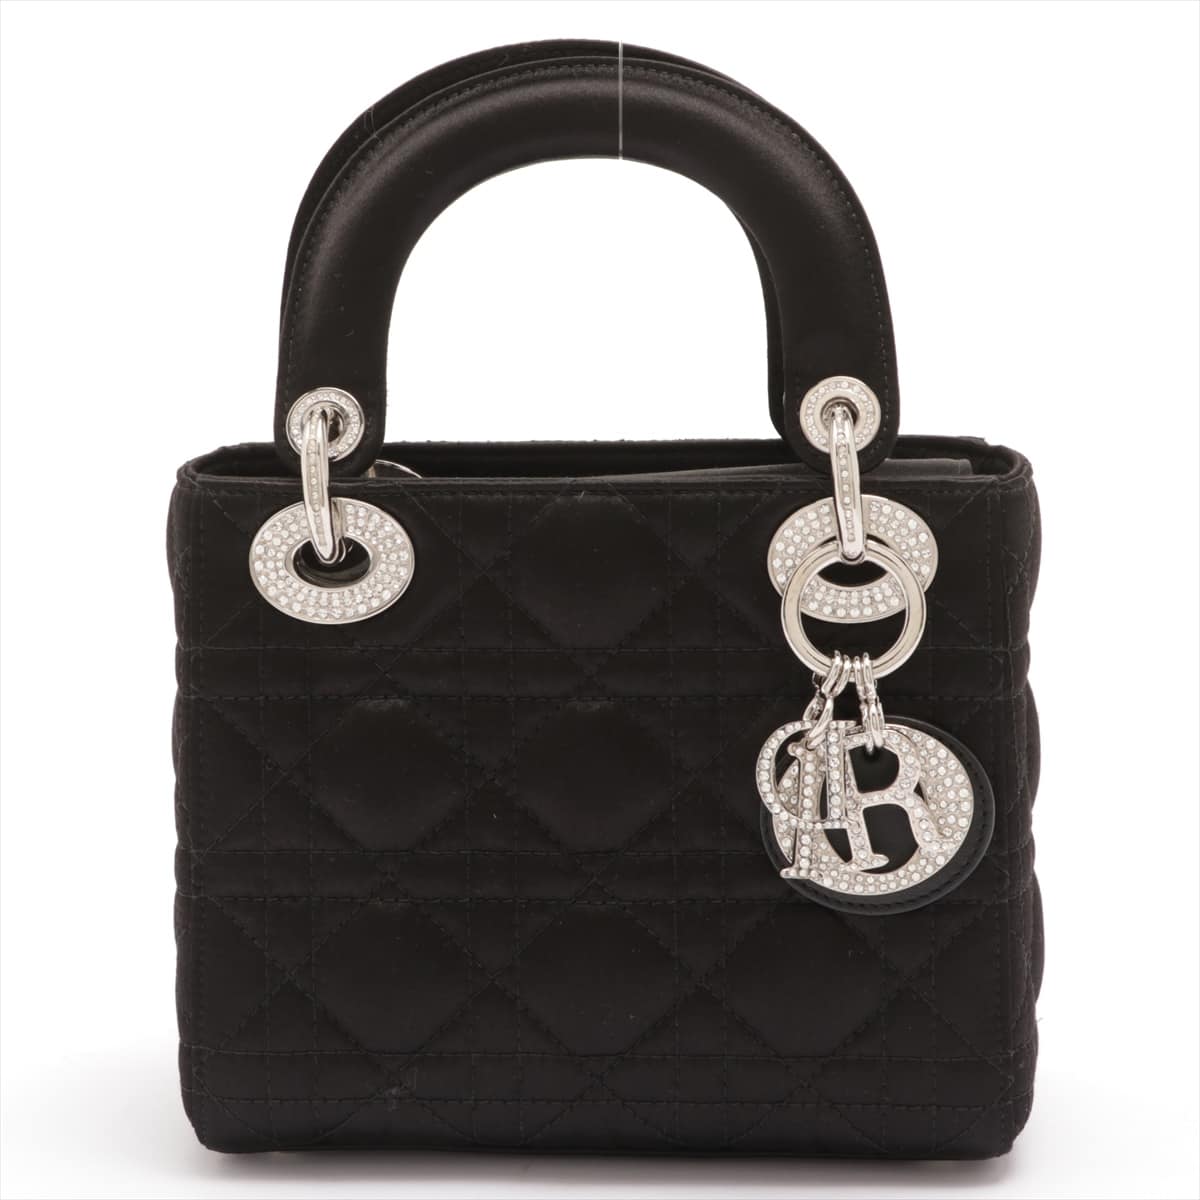 Christian Dior Lady Dior Mini Cannage Satin 2way handbag Black Rhinestone